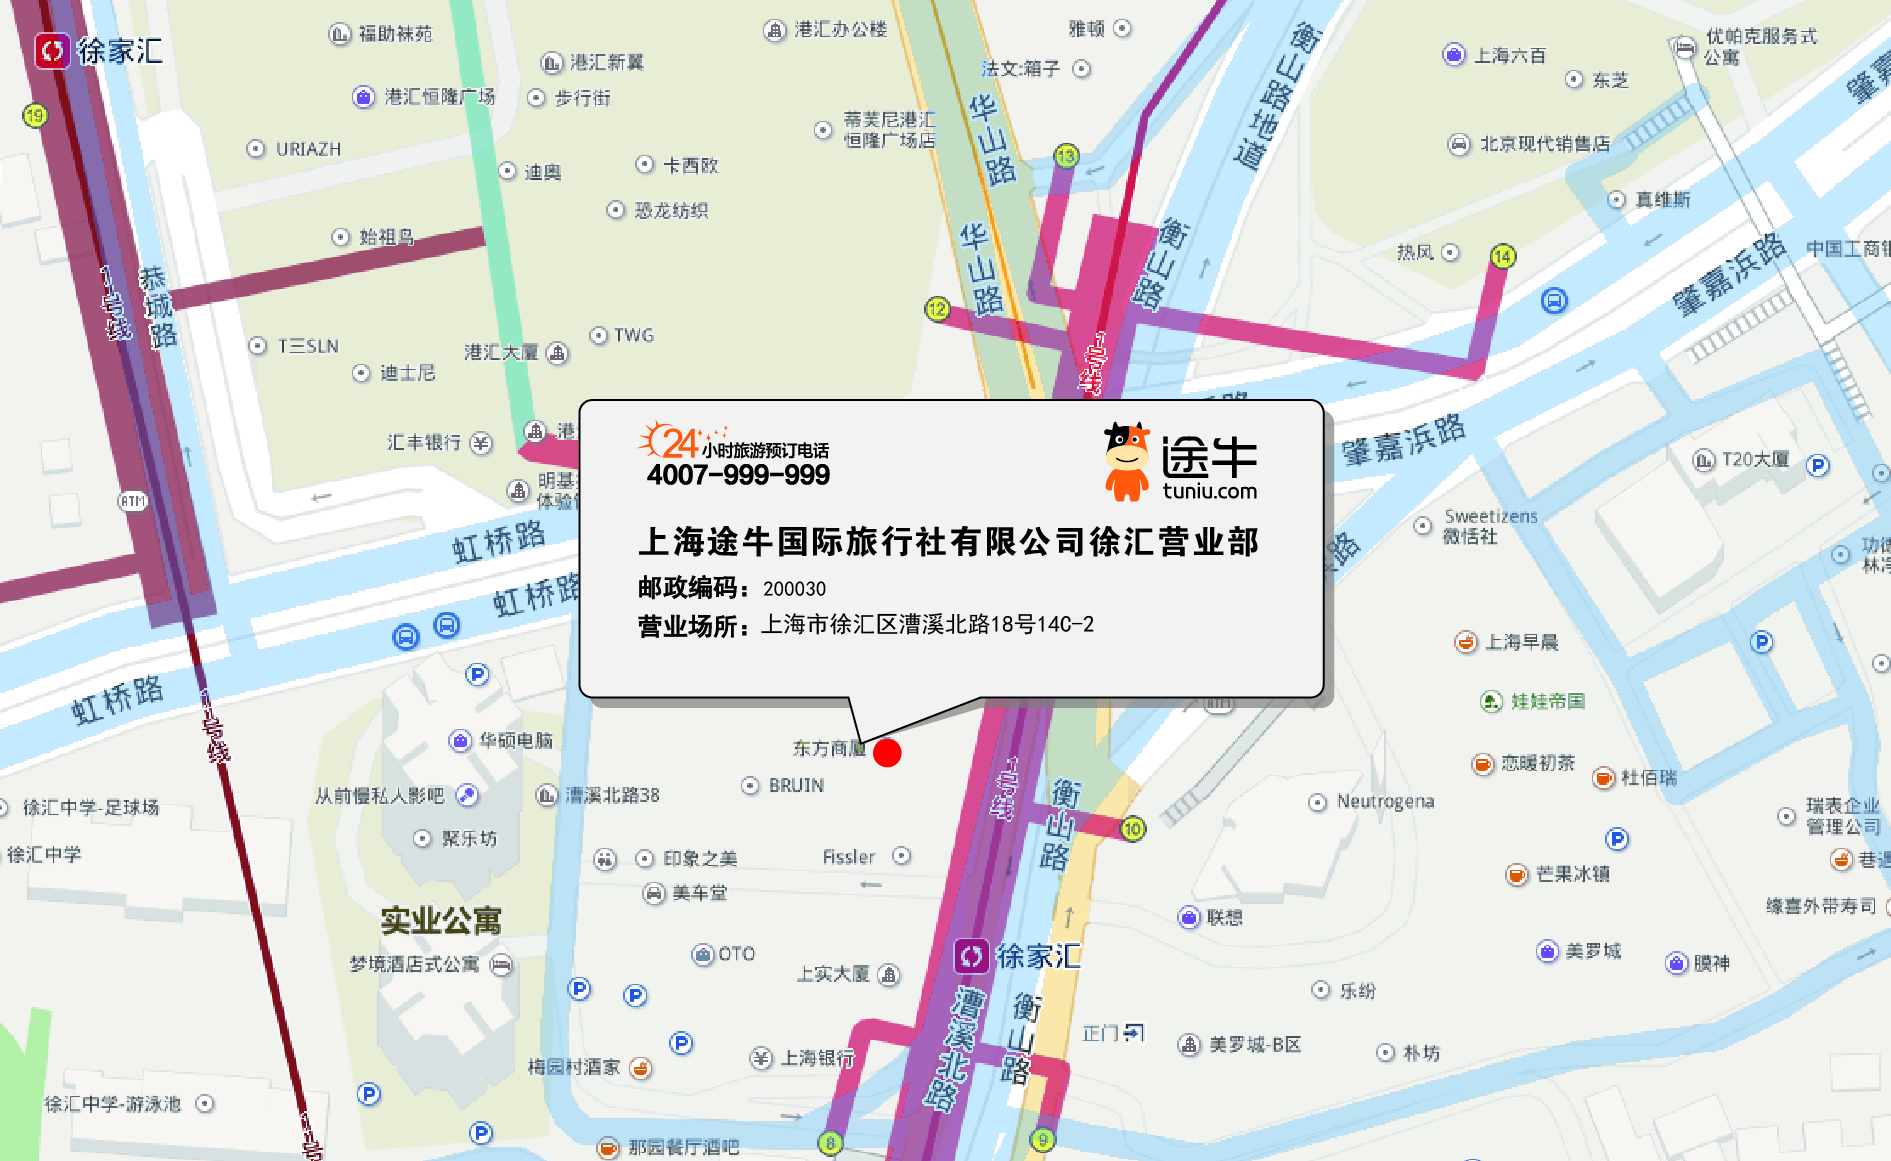 上海途牛国际旅行社有限公司徐汇营业部地图